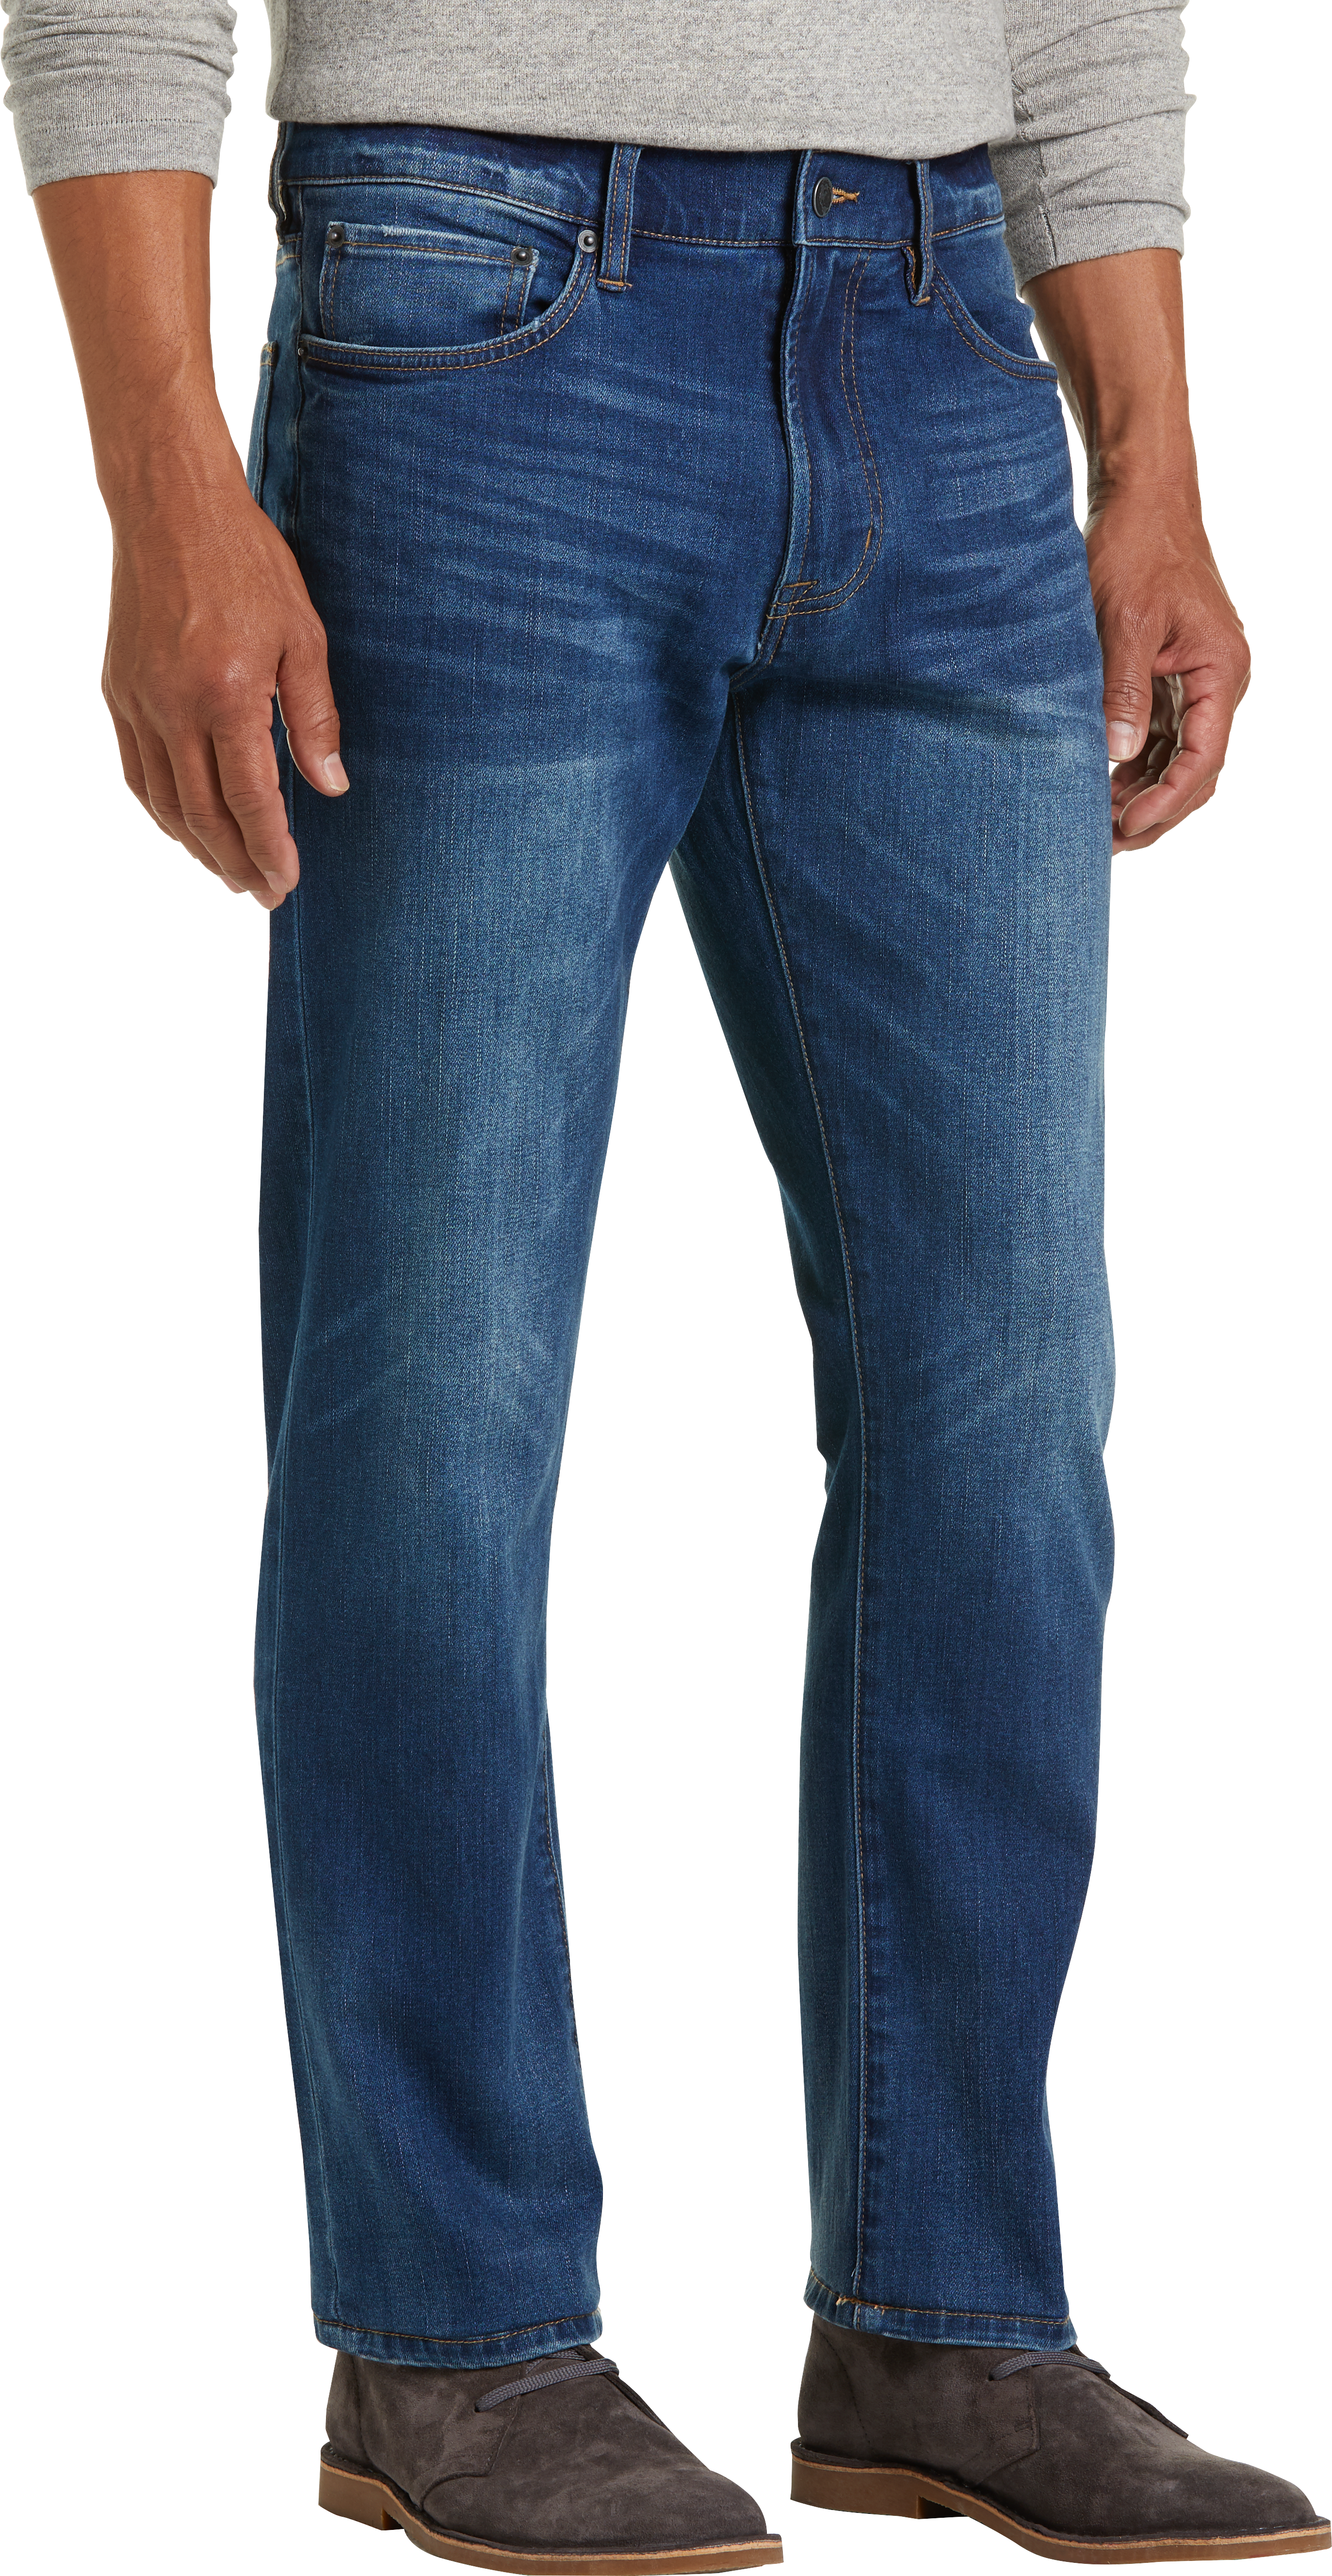 men's wearhouse jeans